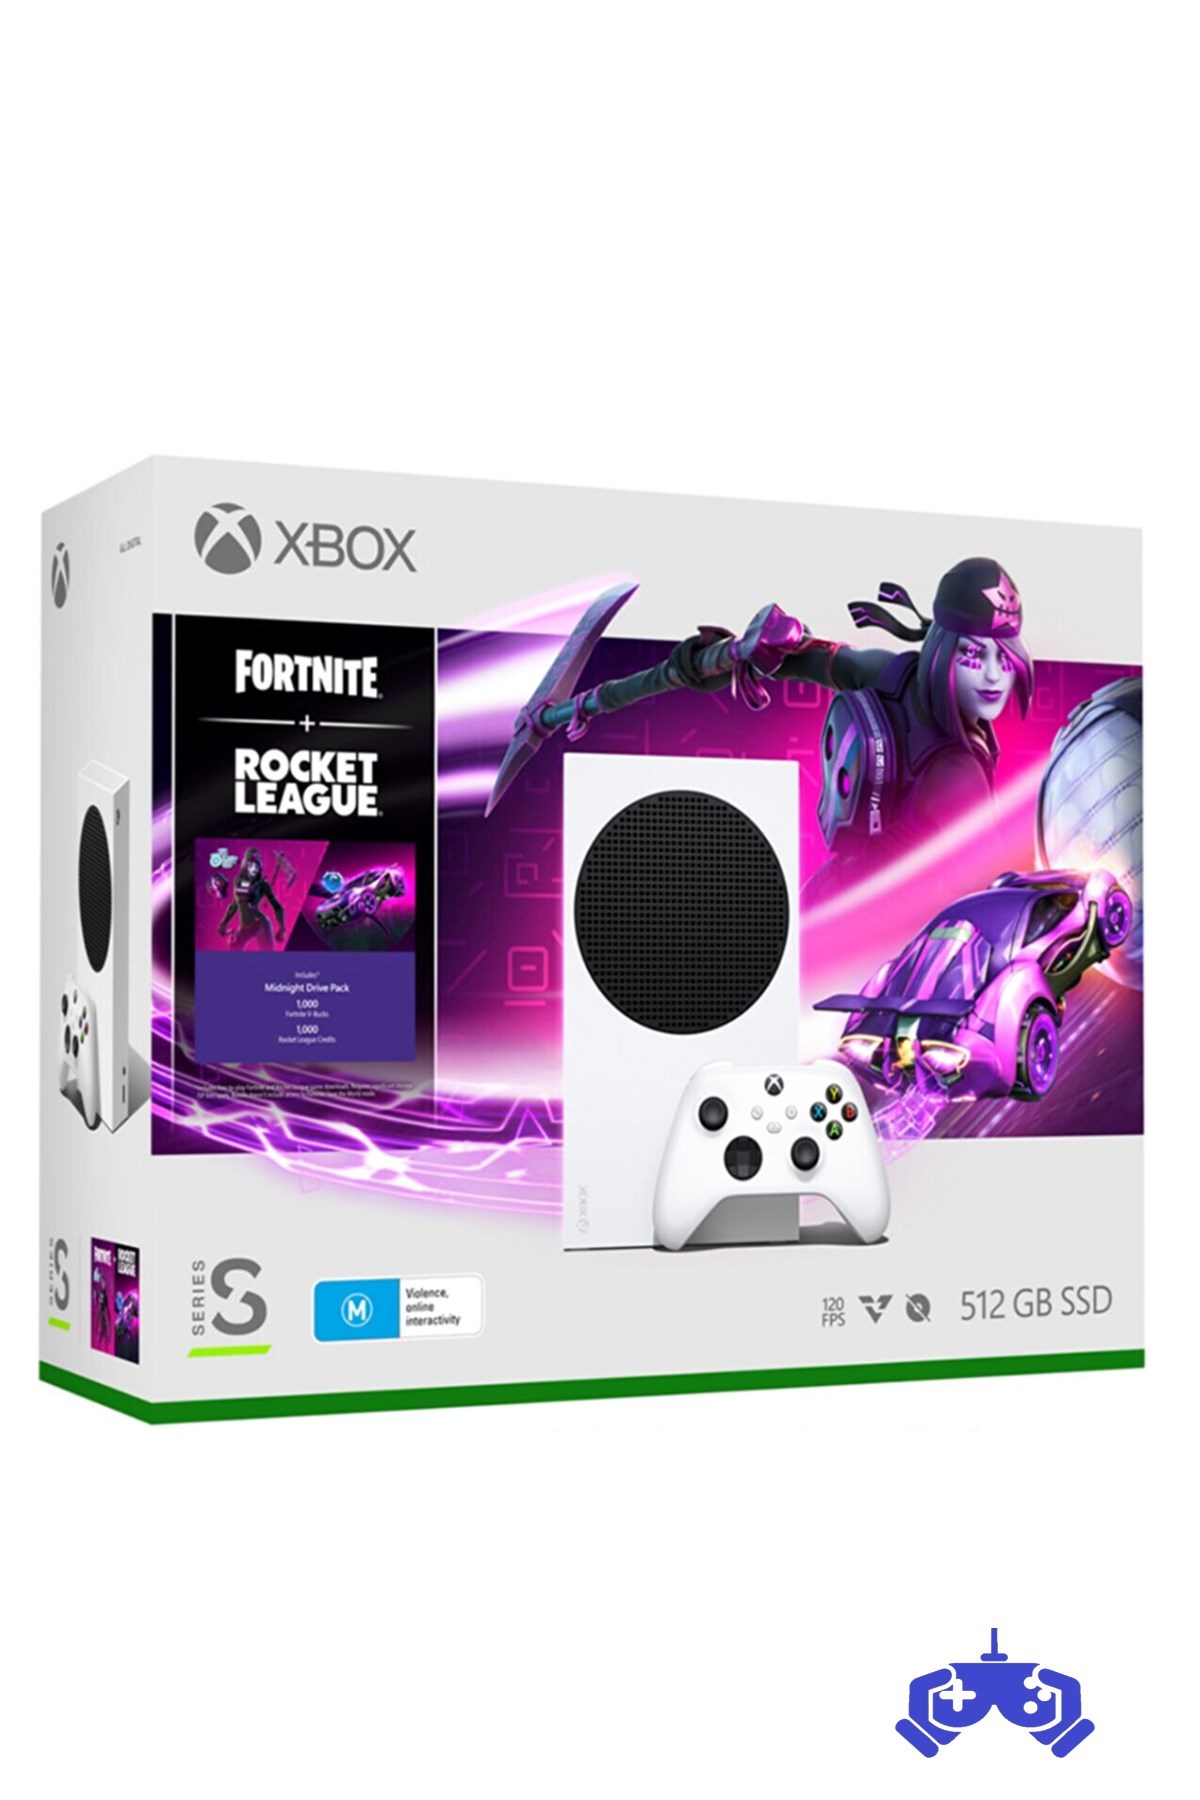 Xbox Series S Oyun Konsolu + Fortnite + Rocket League Paket Fiyatları |  Start Oyun | Uygun Fiyatlı Xbox Ürünleri